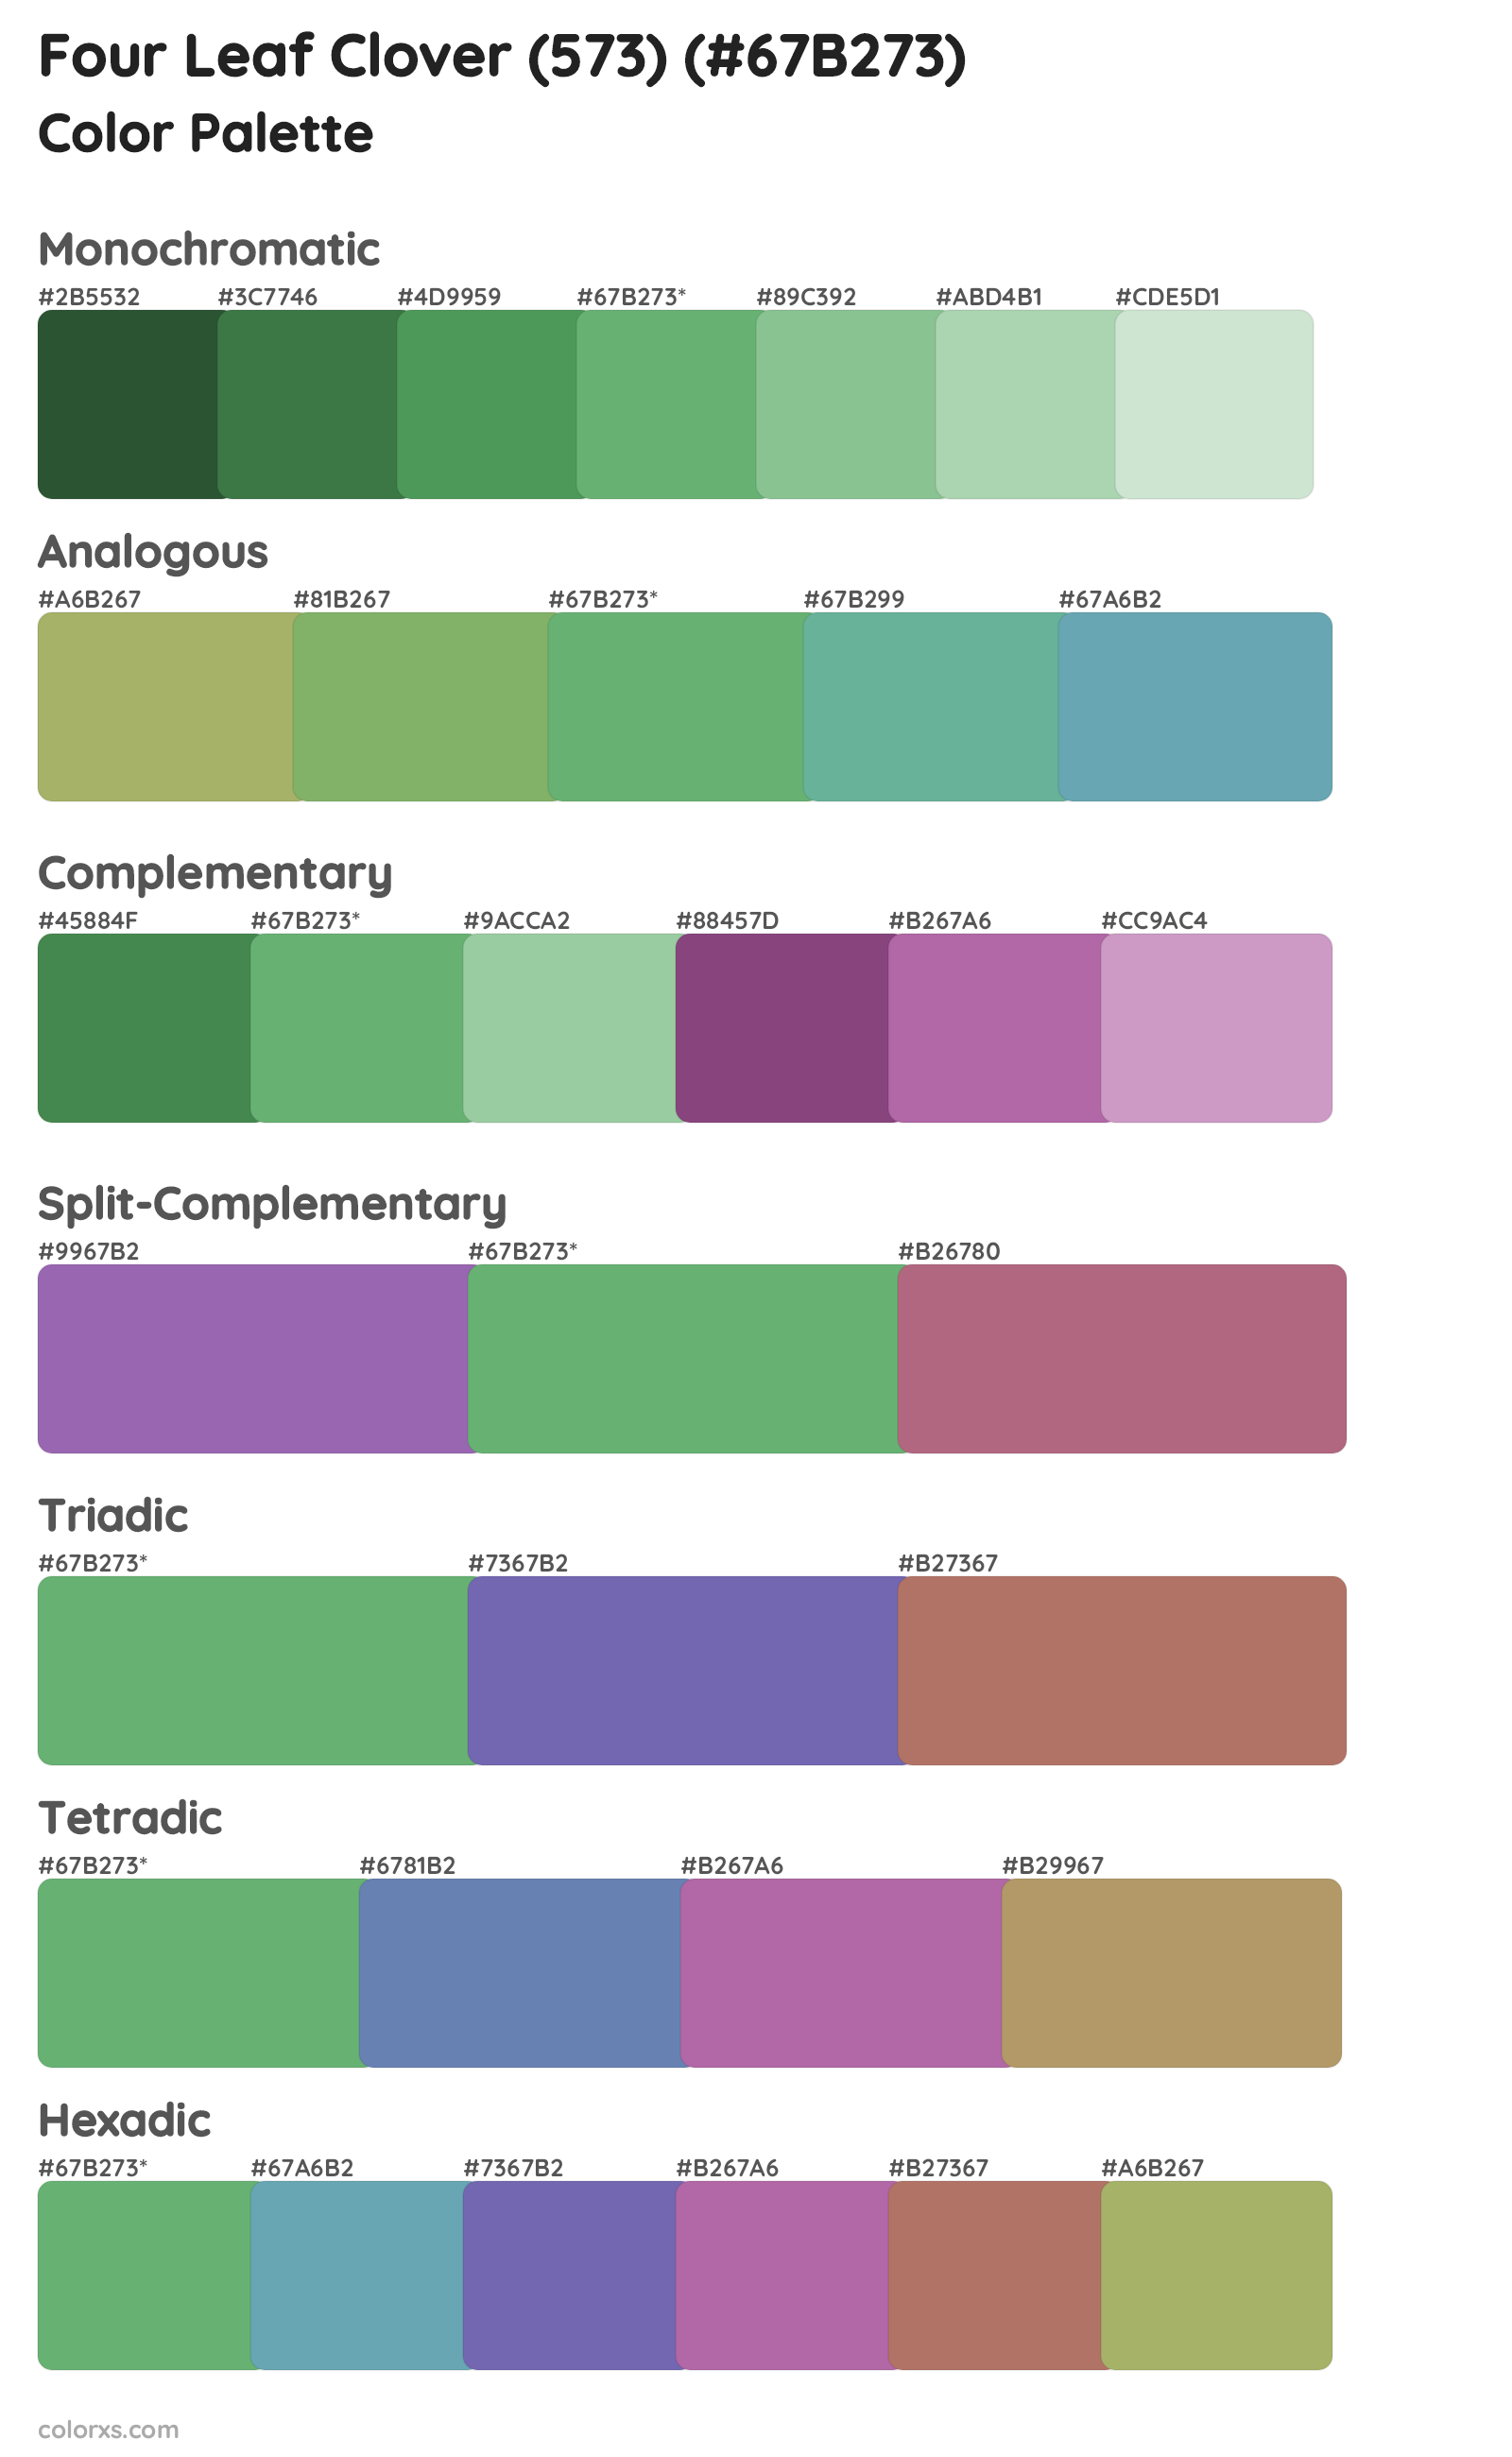 Four Leaf Clover (573) Color Scheme Palettes